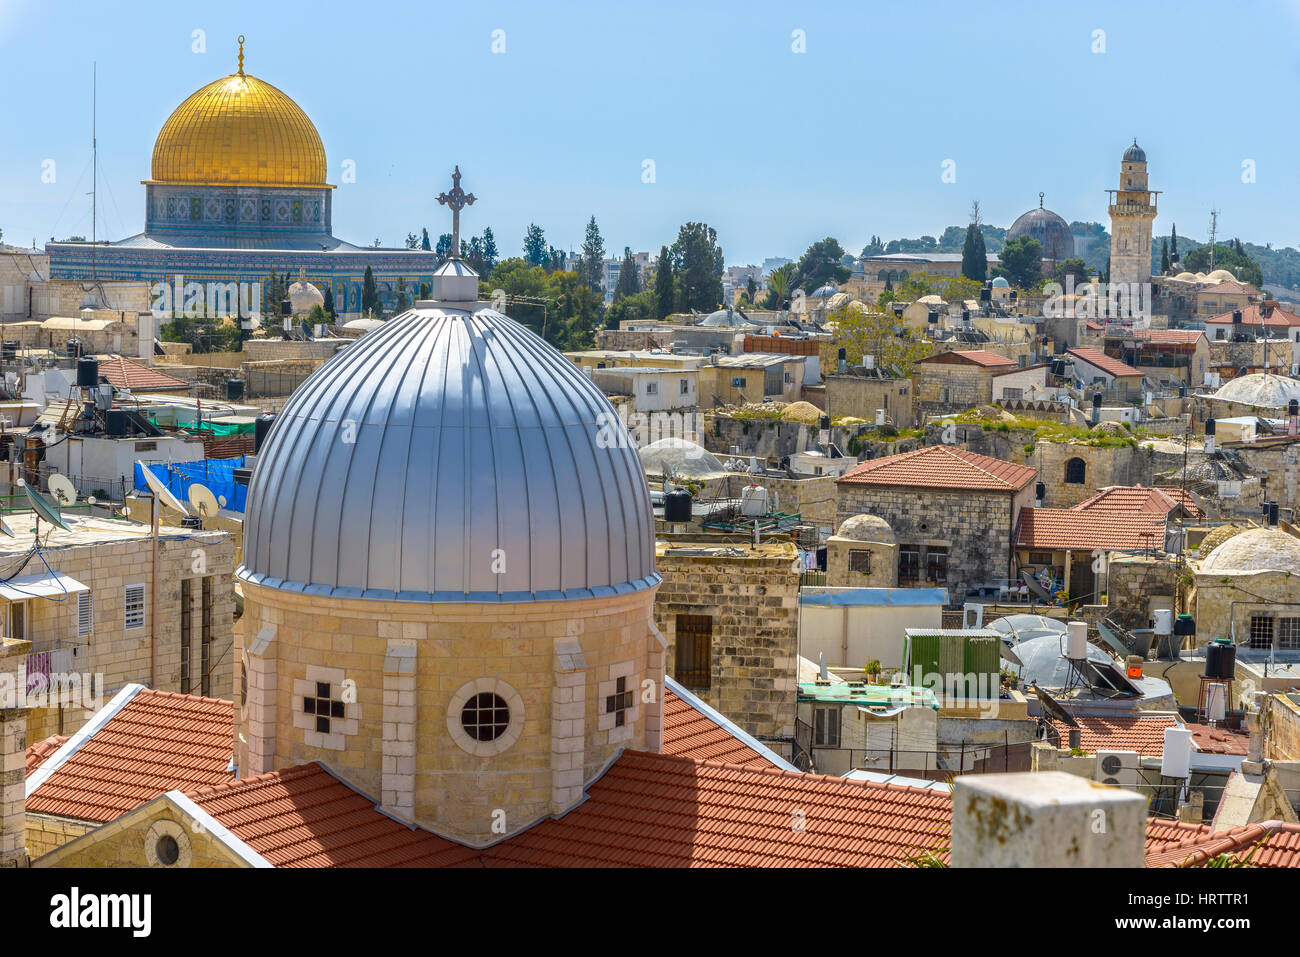 Ein Blick auf n Dächer der Altstadt von Jerusalem. Graue Kuppel der Frauenkirche von der Krampf (armenische Kirche) und die goldene Kuppel des Felsens. Stockfoto